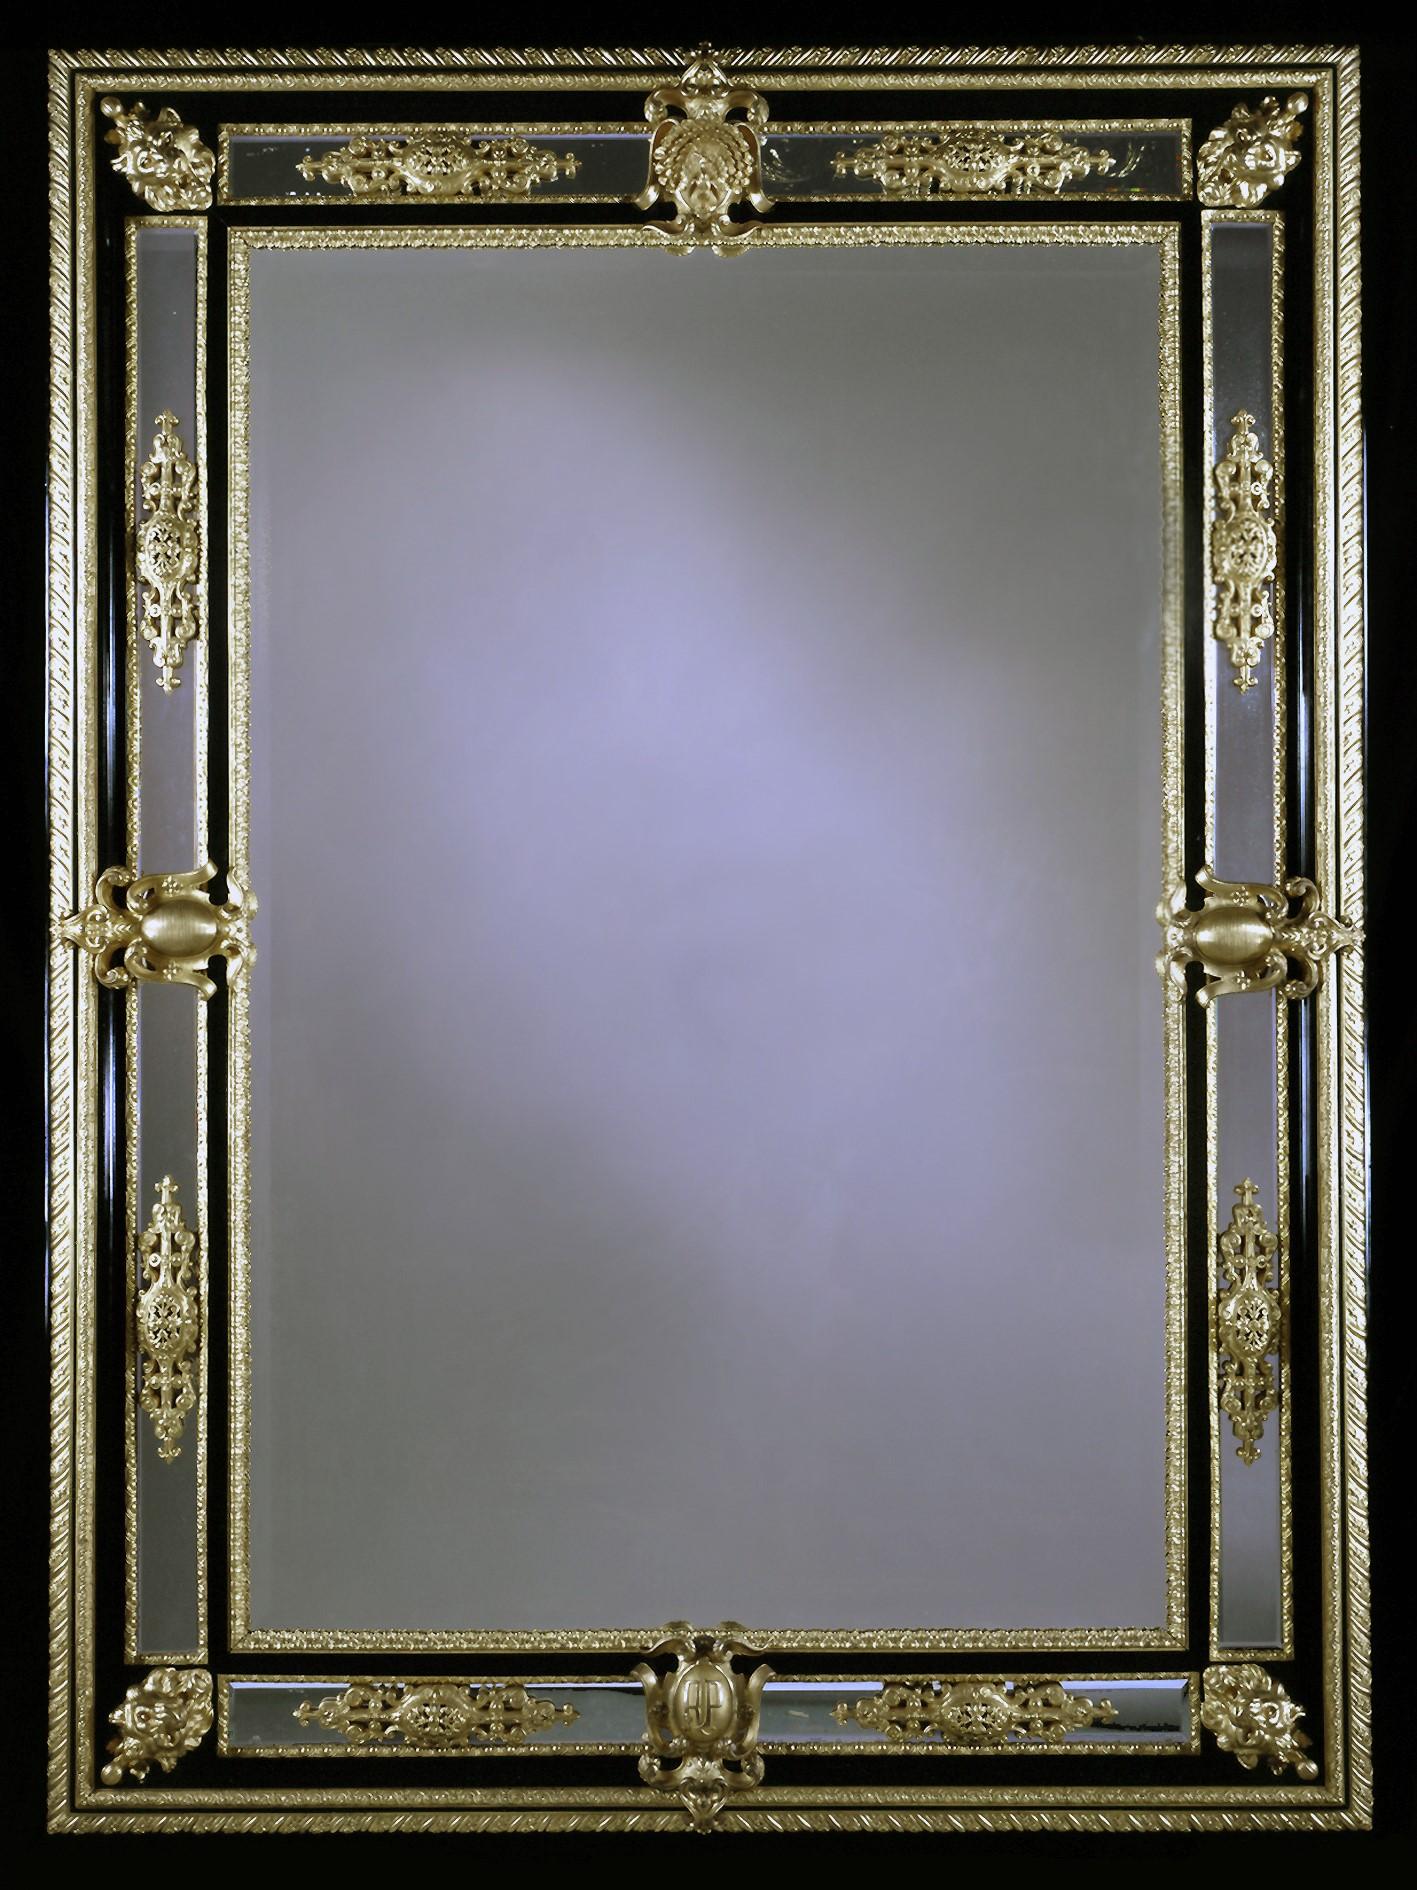 Un beau et impressionnant miroir biseauté Napoléon III en bronze doré et ébène.

Française, vers 1850.

Un beau et impressionnant miroir biseauté Napoléon III en bronze doré et ébène avec des masques de lion en bronze moulé montés sur les coins